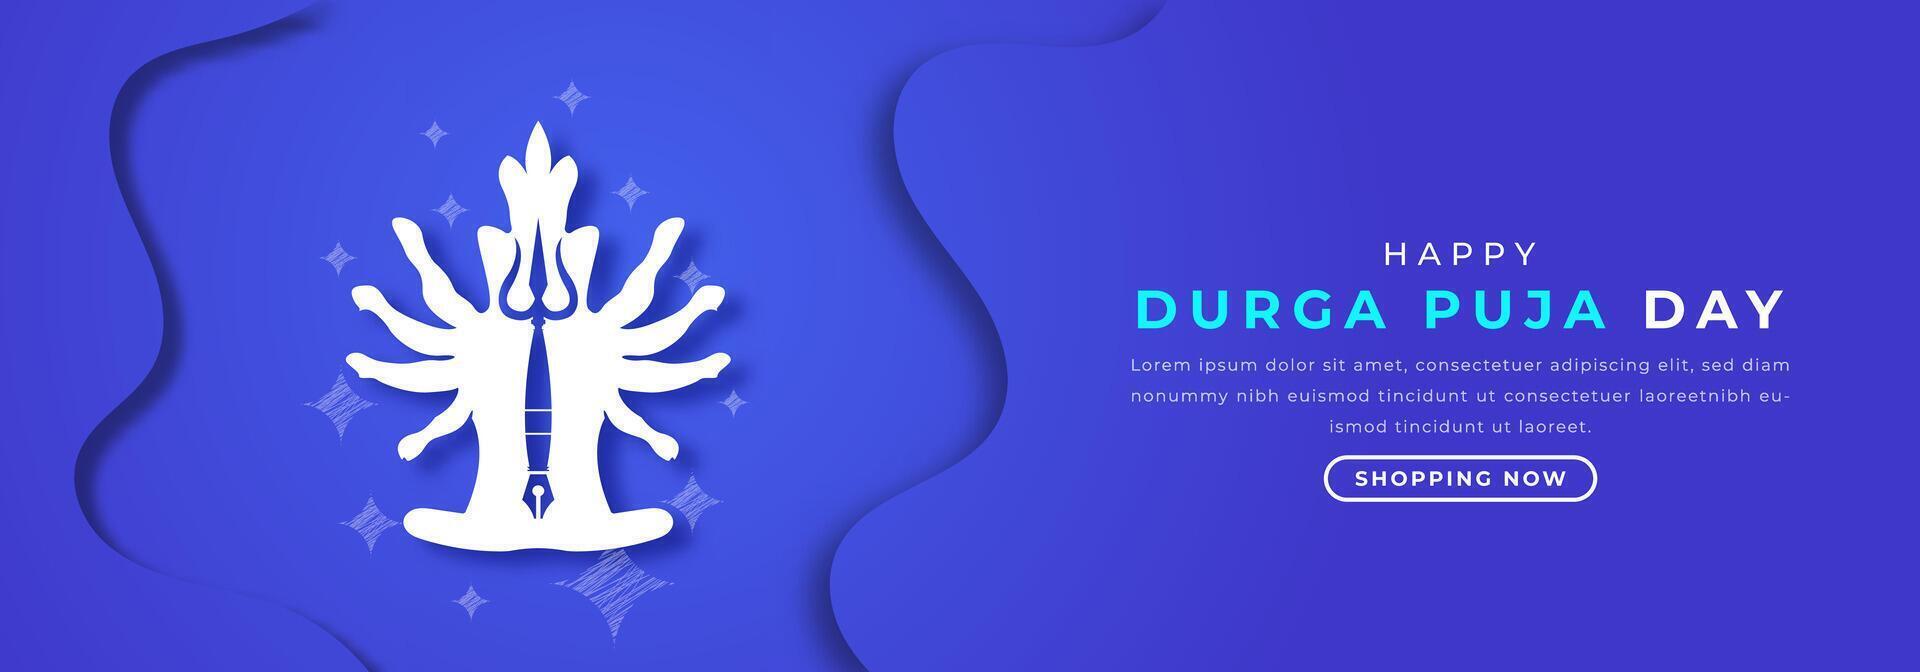 contento Durga puja giorno carta tagliare stile vettore design illustrazione per sfondo, manifesto, striscione, pubblicità, saluto carta